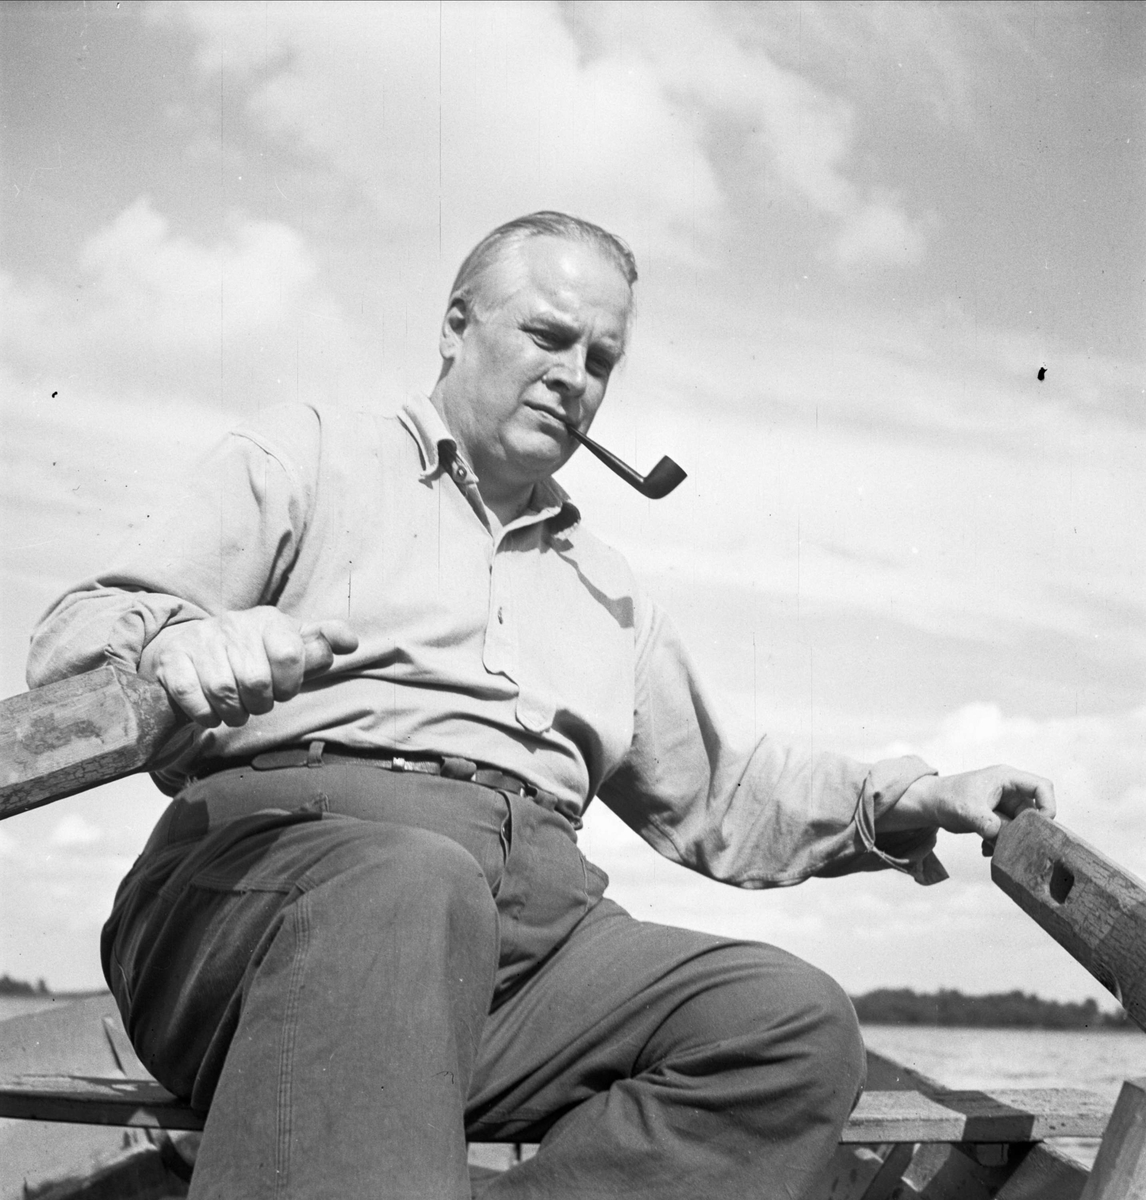 Redaktör Stig Carlbring på sommarnöjet, Uppland 1954